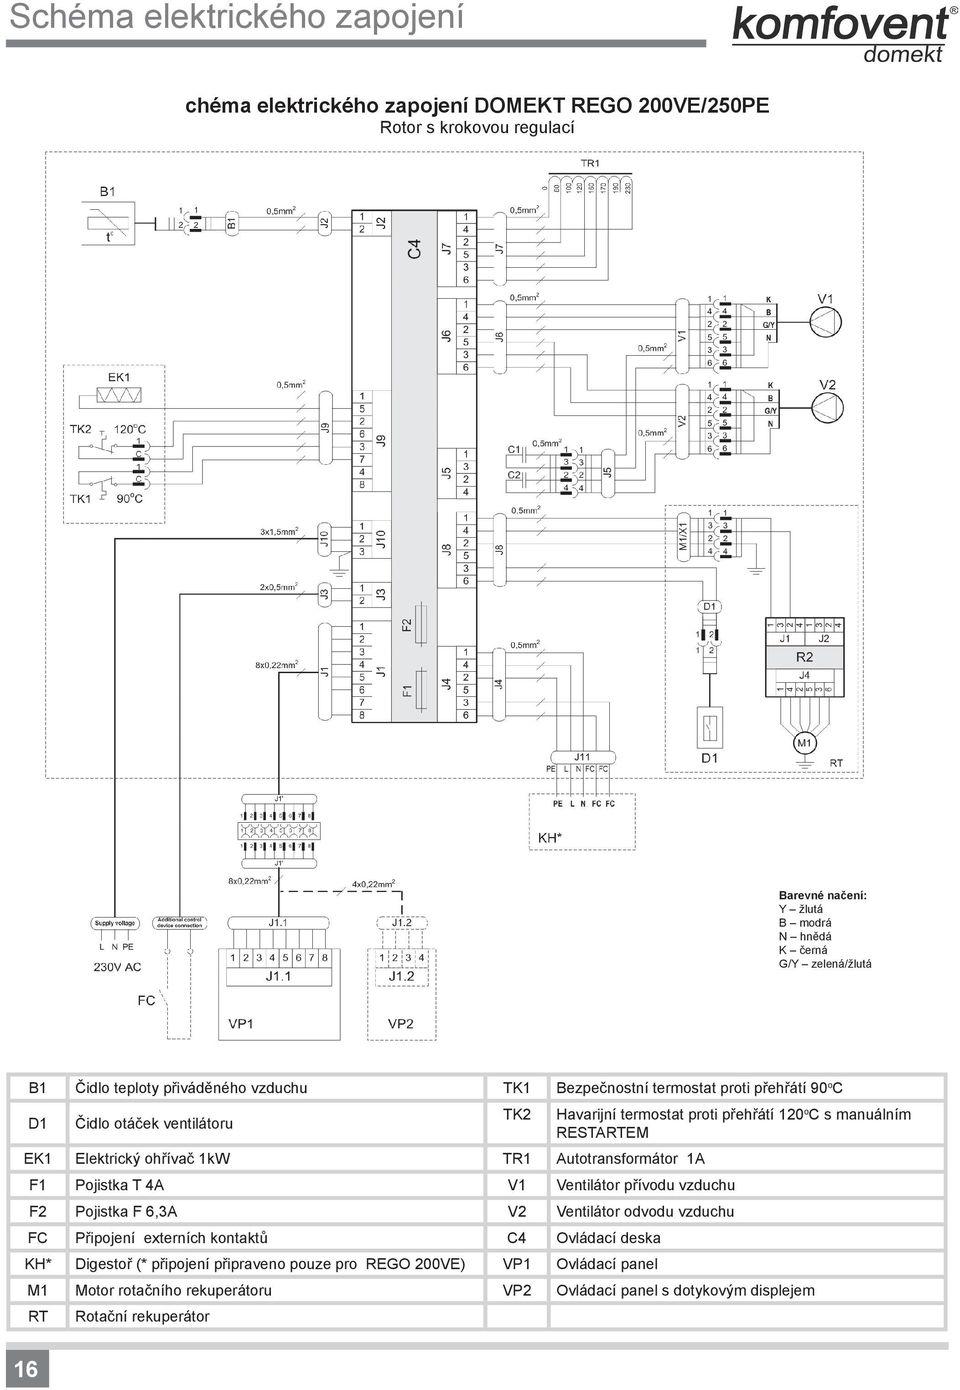 Pojistka T 4A V1 Ventilátor přívodu vzduchu F2 Pojistka F 6,3A V2 Ventilátor odvodu vzduchu FC Připojení externích kontaktů C4 Ovládací deska KH* Digestoř (*